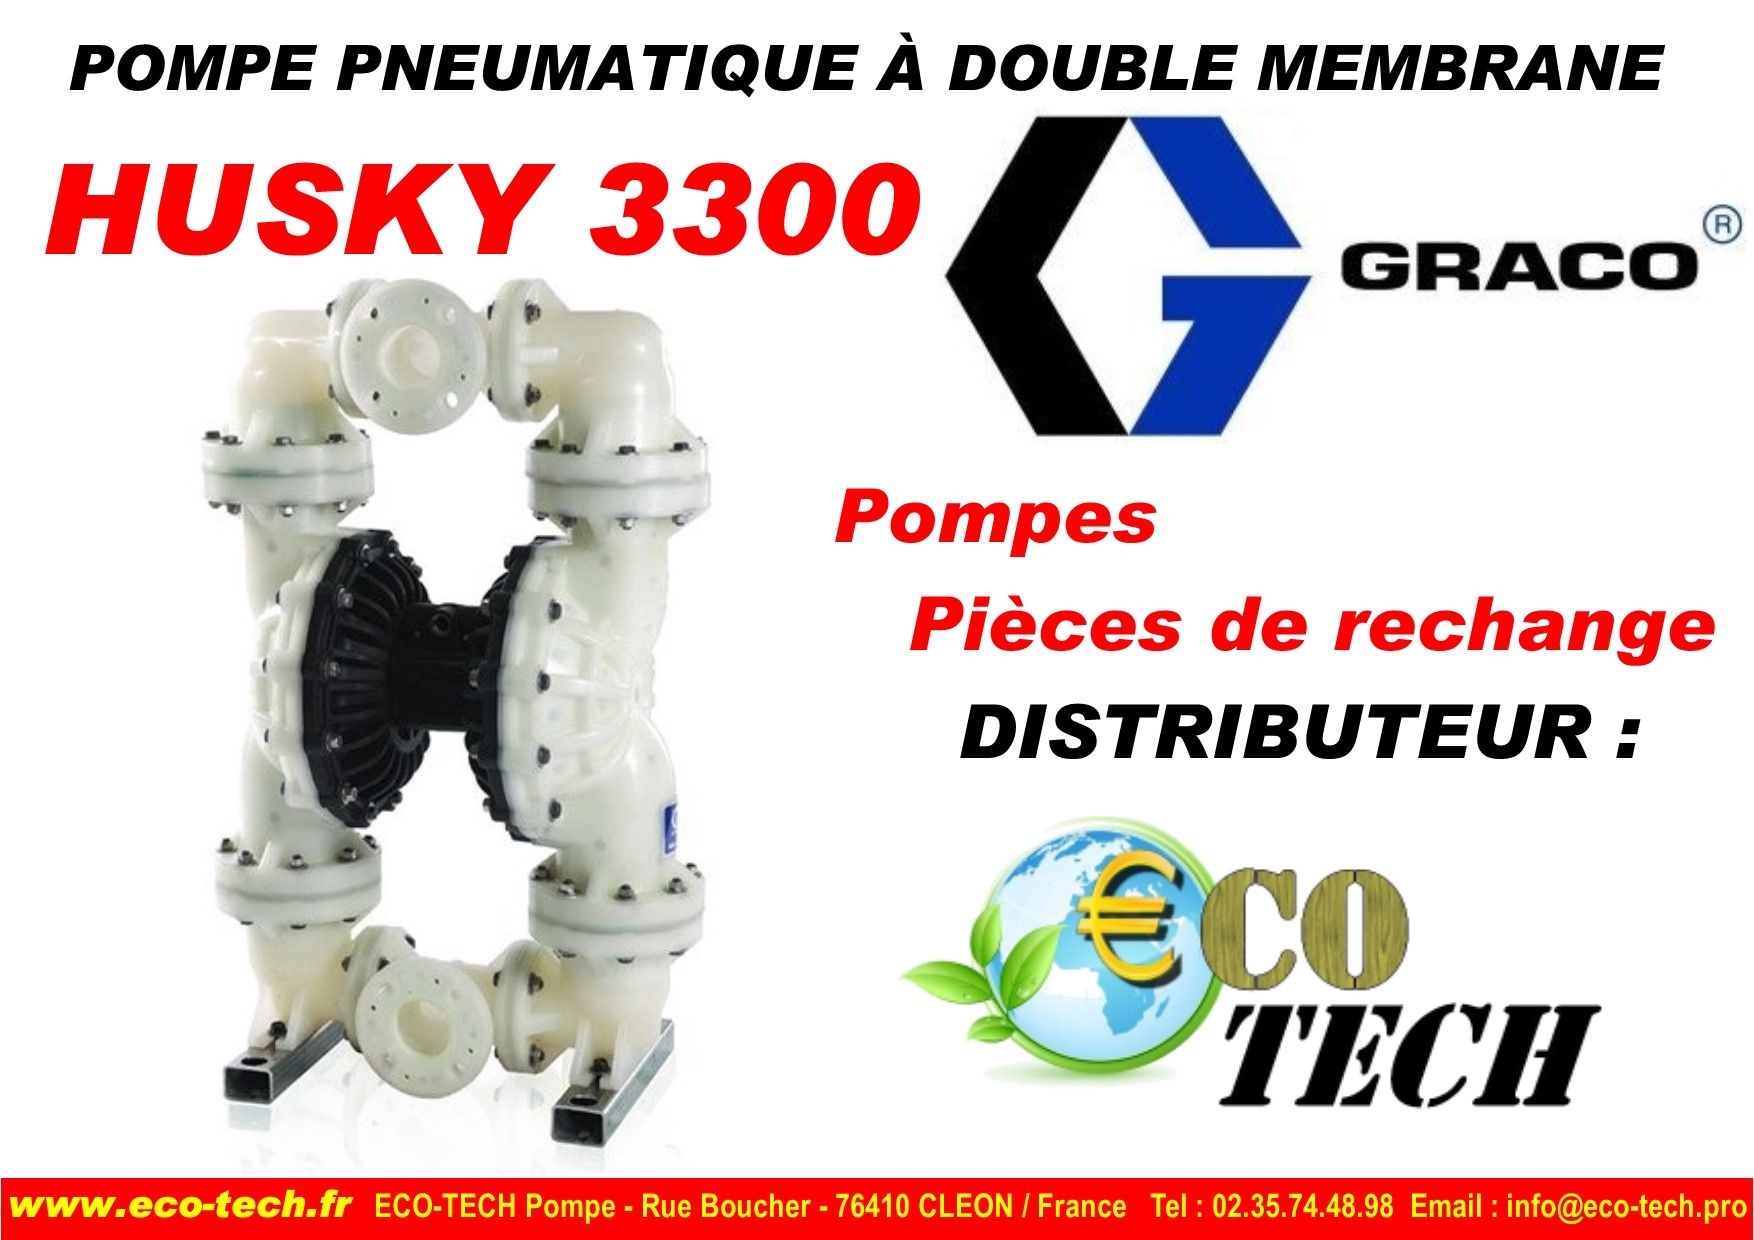 Pompe pneumatique  graco à double membrane husky 3300 sommes oise nord_0